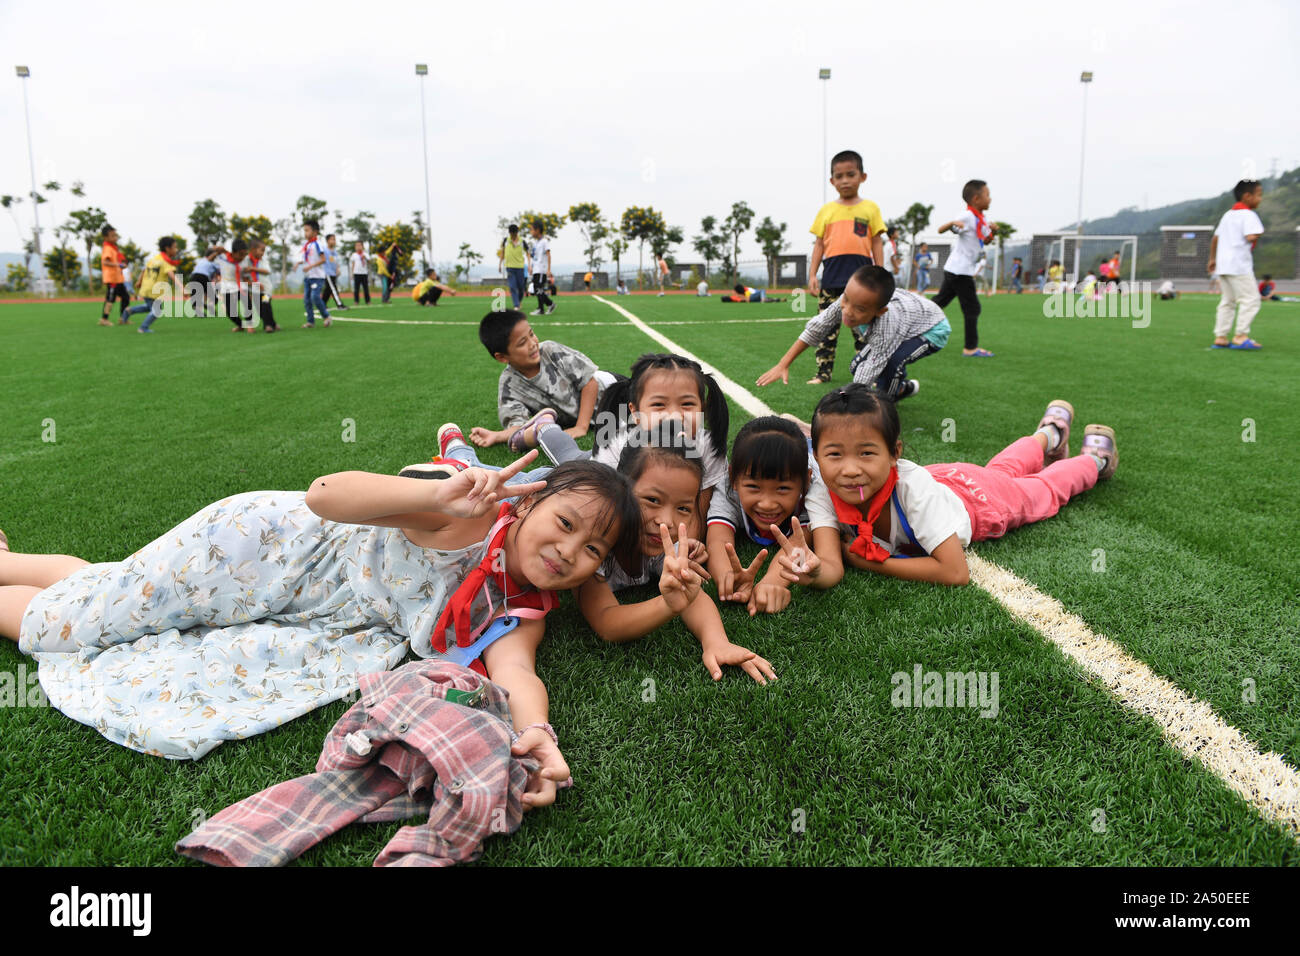 (191017) -- LONGAN, Ottobre 17, 2019 (Xinhua) -- Gli studenti giocano sul terreno della Yuegui scuola primaria in Longan County, a sud della Cina di Guangxi Zhuang Regione autonoma, 16 ottobre 2019. Yuegui scuola primaria, messi in uso nel mese di agosto del 2019, è uno dei programmi sotto un alleviamento della povertà quadro di cooperazione tra Guangxi e sud della Cina di Provincia di Guangdong. Esso è anche il progetto di supporto in corrispondenza della zona di reinsediamento per riposizionato poveri in Longan County. Ora un totale di 1.941 gli studenti a studiare presso la scuola e la maggior parte di essi vive nella zona di reinsediamento. (Xinhua/Cao Yiming) Foto Stock